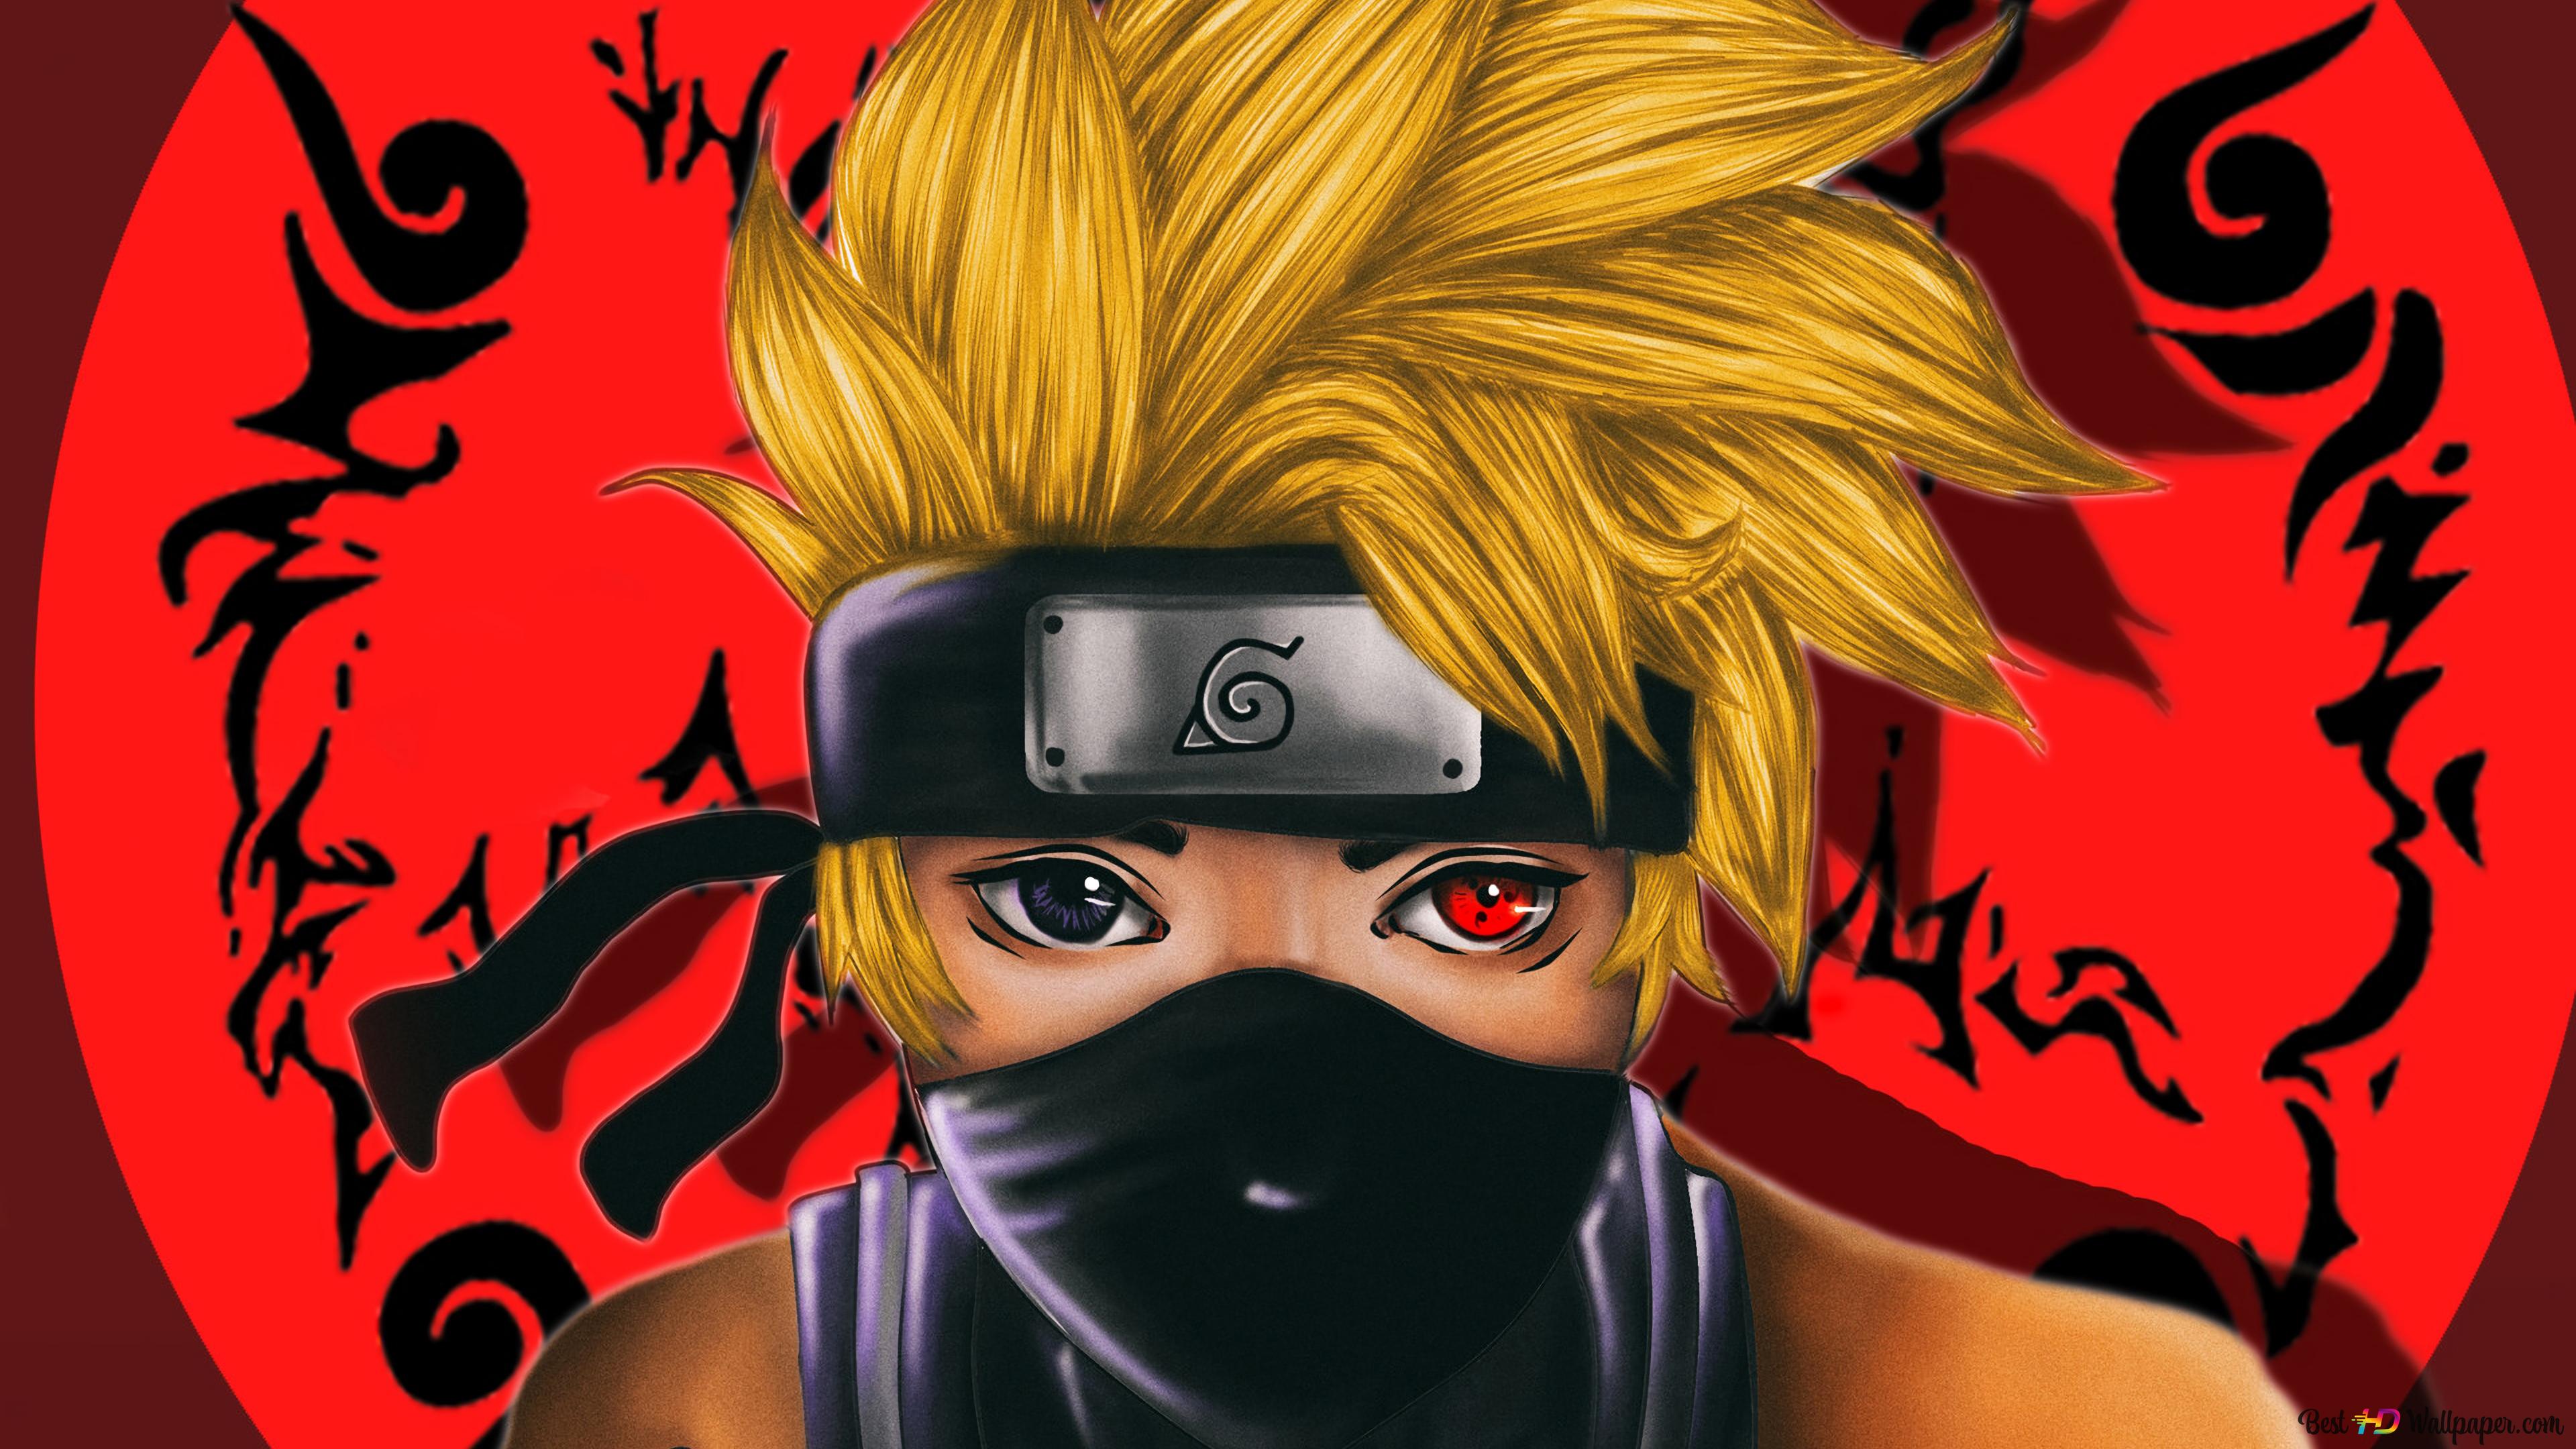 Naruto with an sharingan eye k wallpaper download